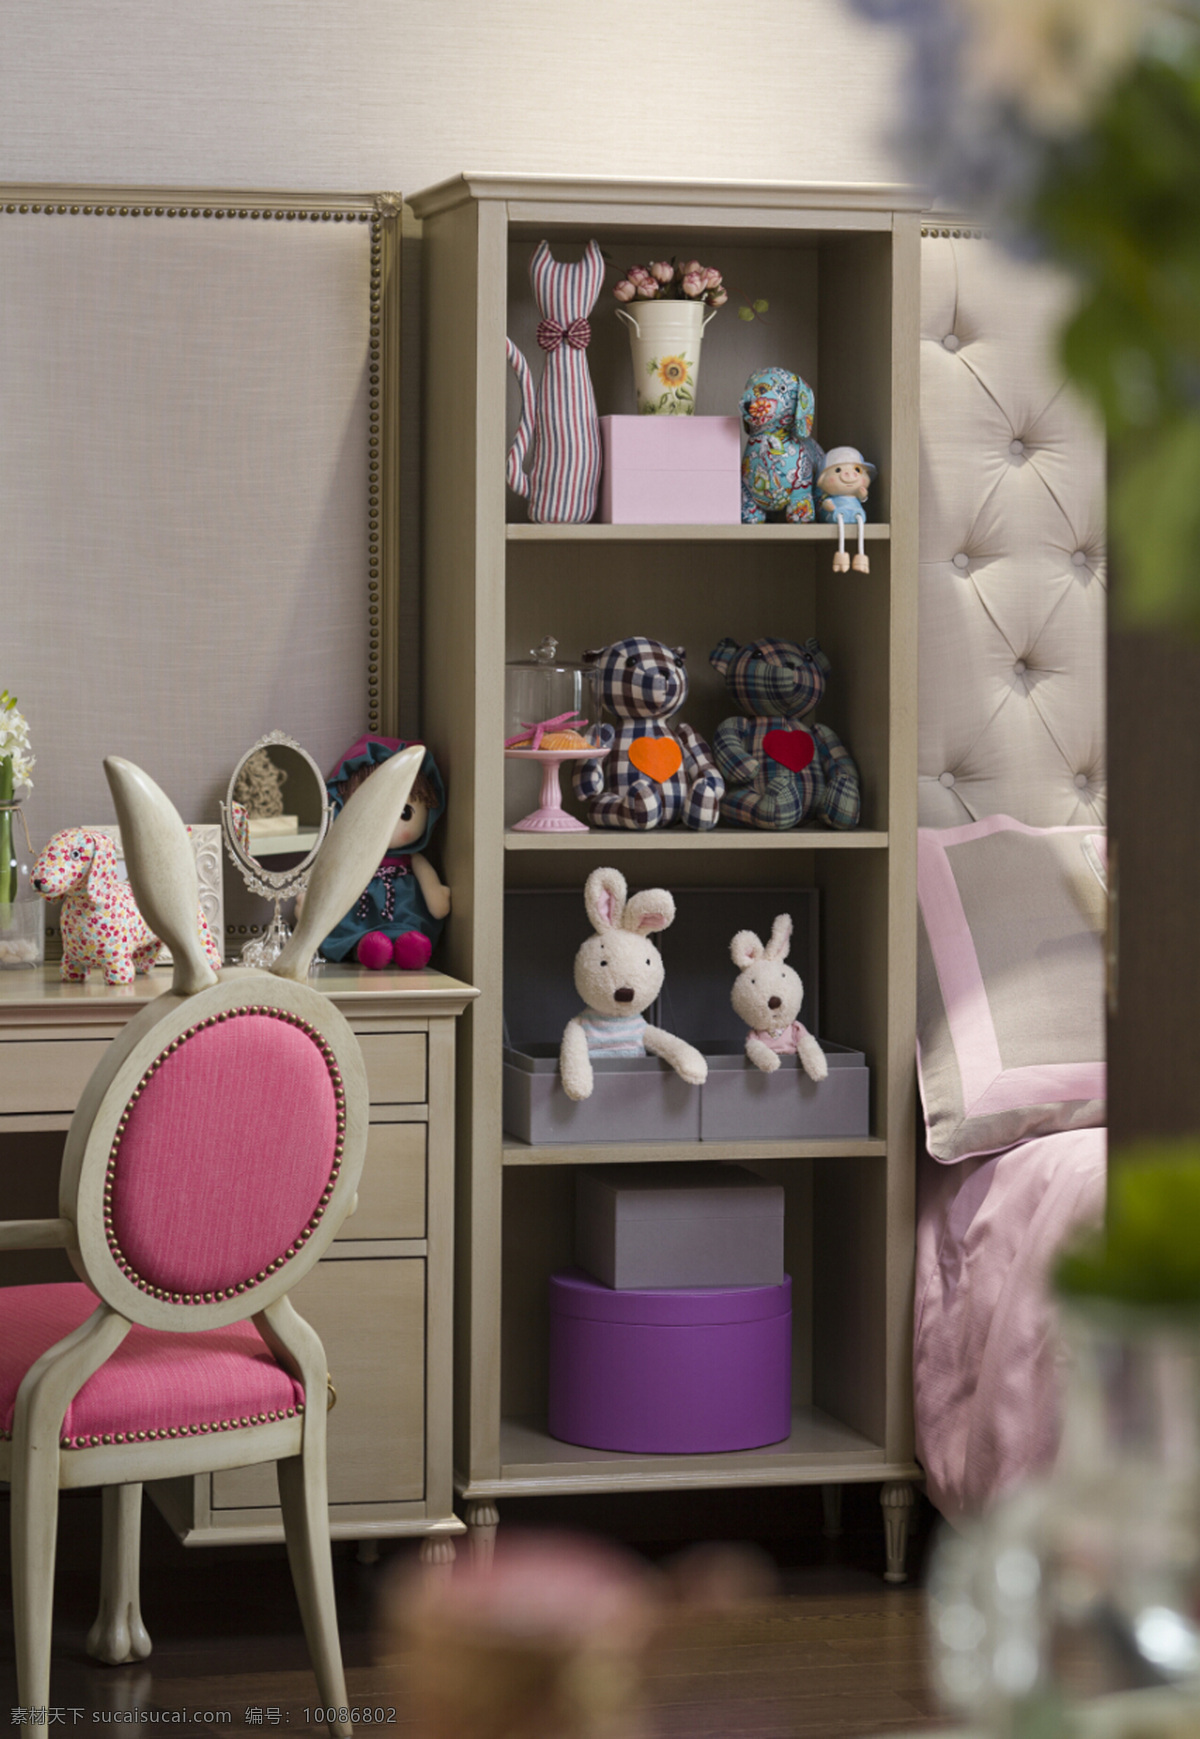 美式 粉色 卧室 柜子 设计图 家居 家居生活 室内设计 装修 室内 家具 装修设计 环境设计